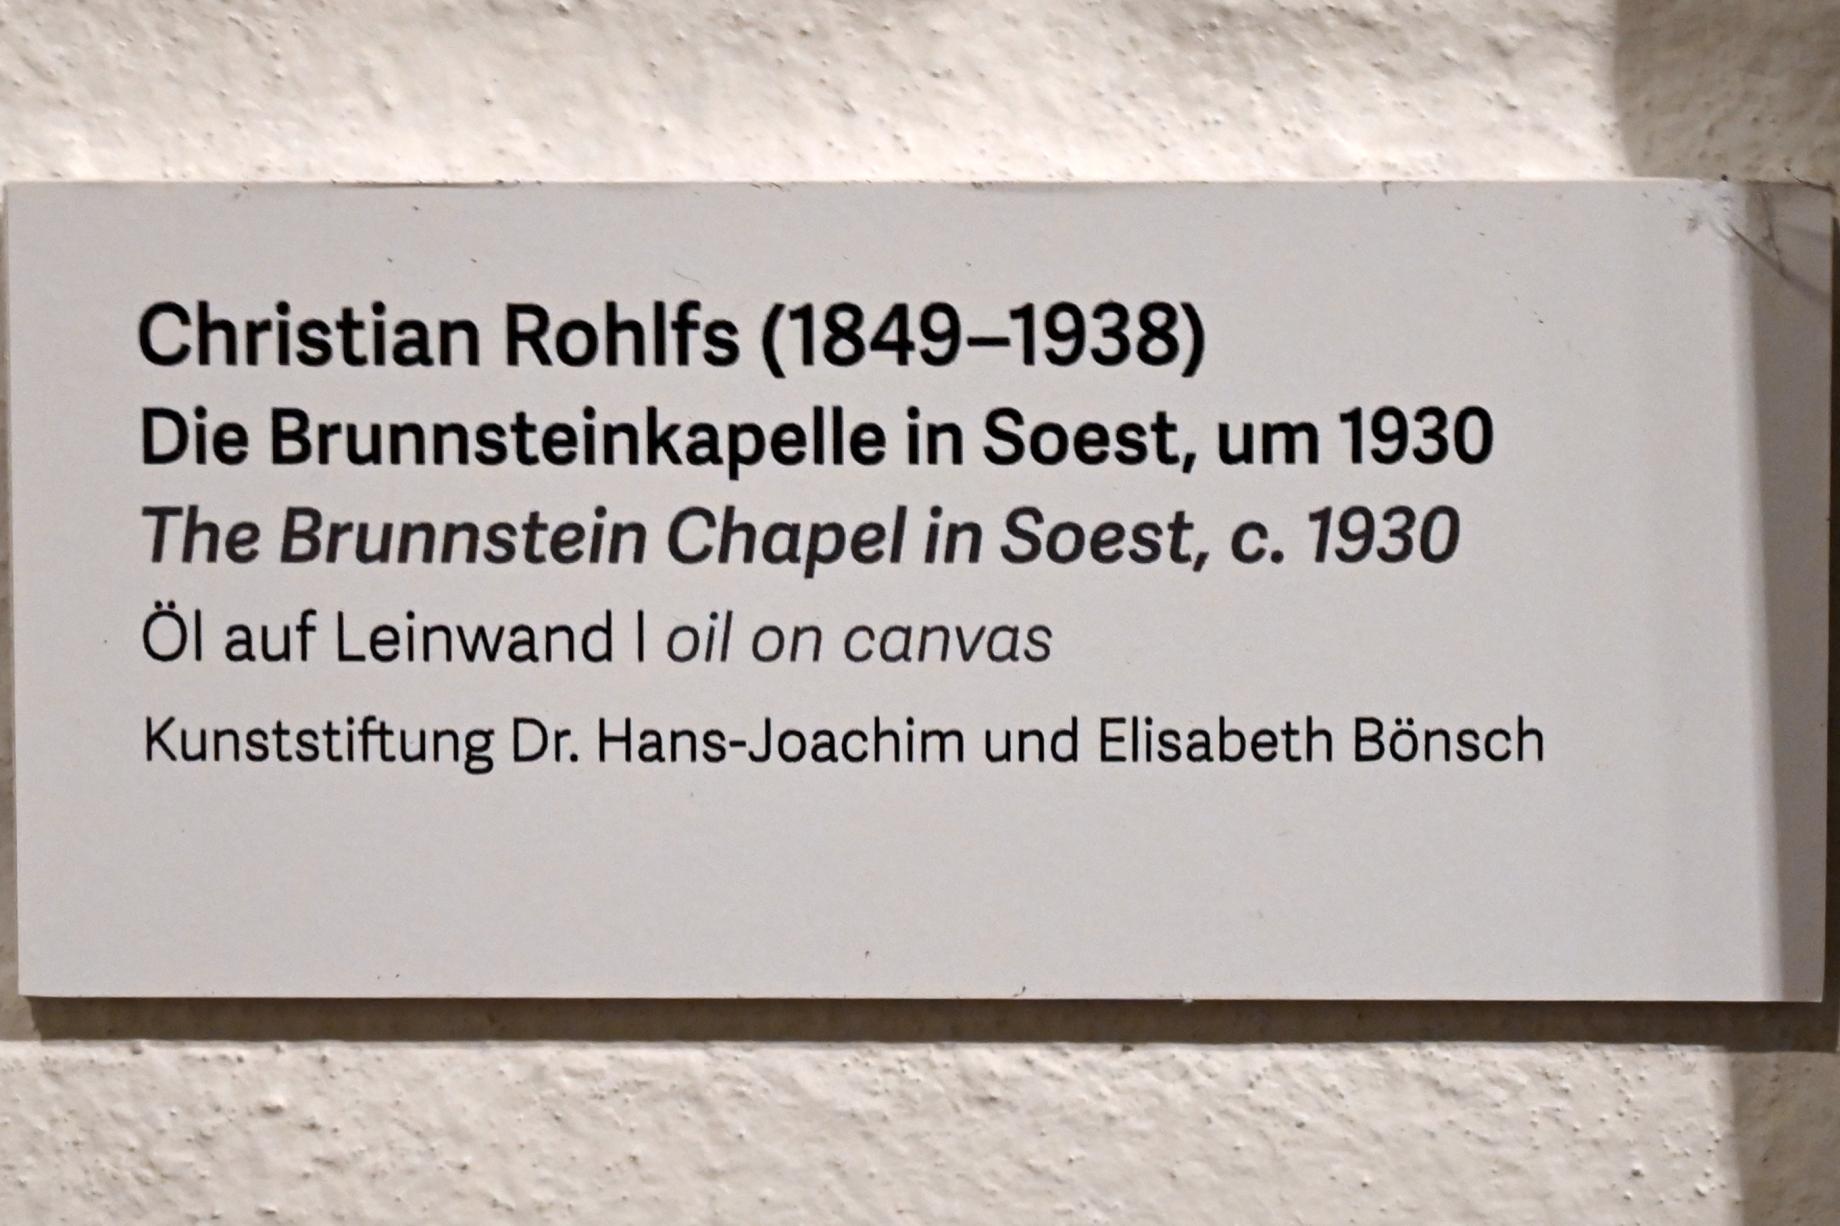 Christian Rohlfs (1874–1930), Die Brunnsteinkapelle in Soest, Schleswig, Landesmuseum für Kunst und Kulturgeschichte, Kunst im 20. Jh., um 1930, Bild 2/2